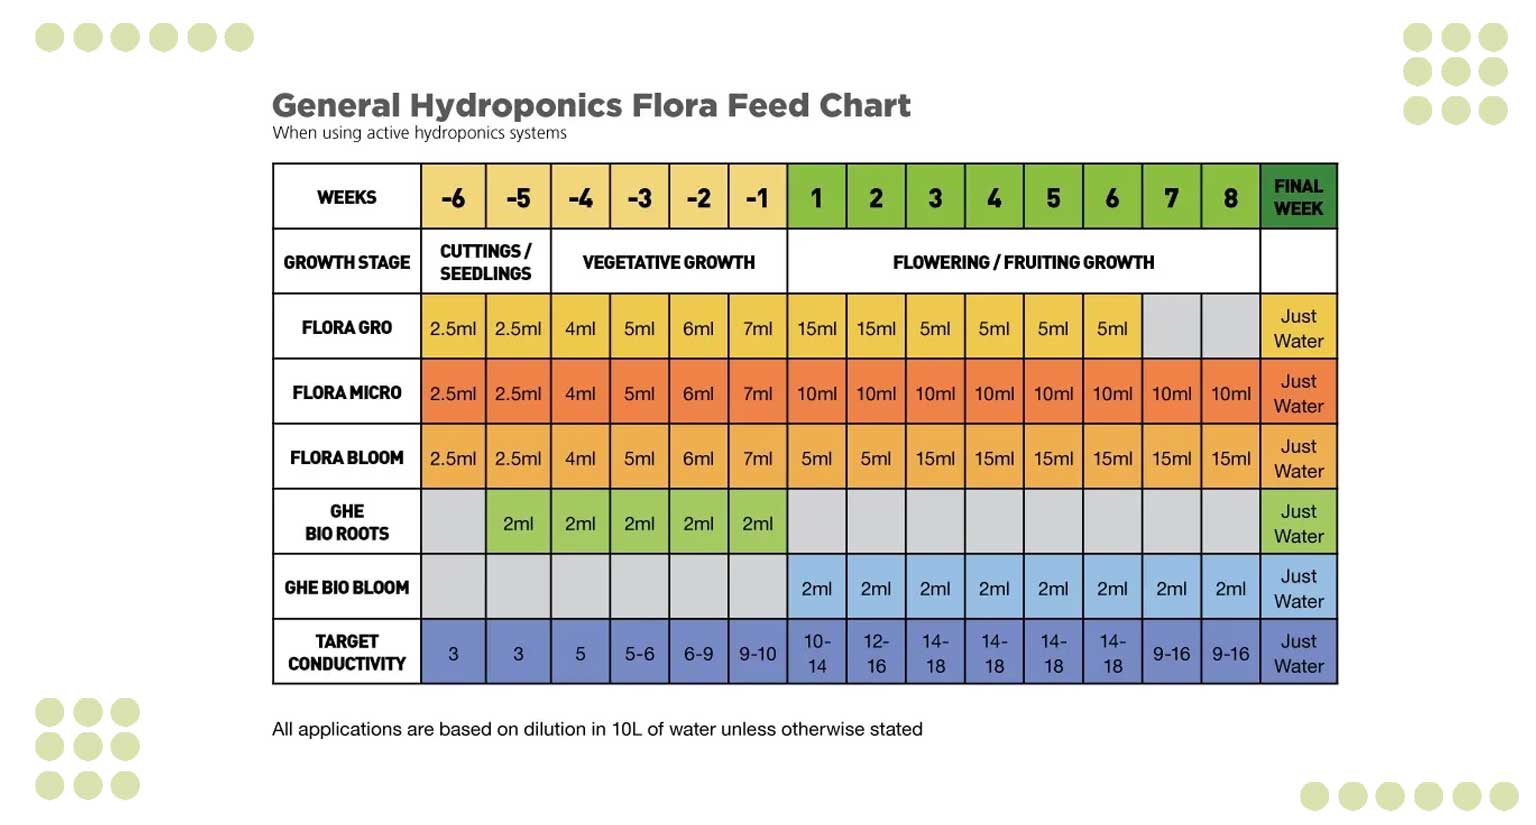 General hydroponics floranova feeding chart